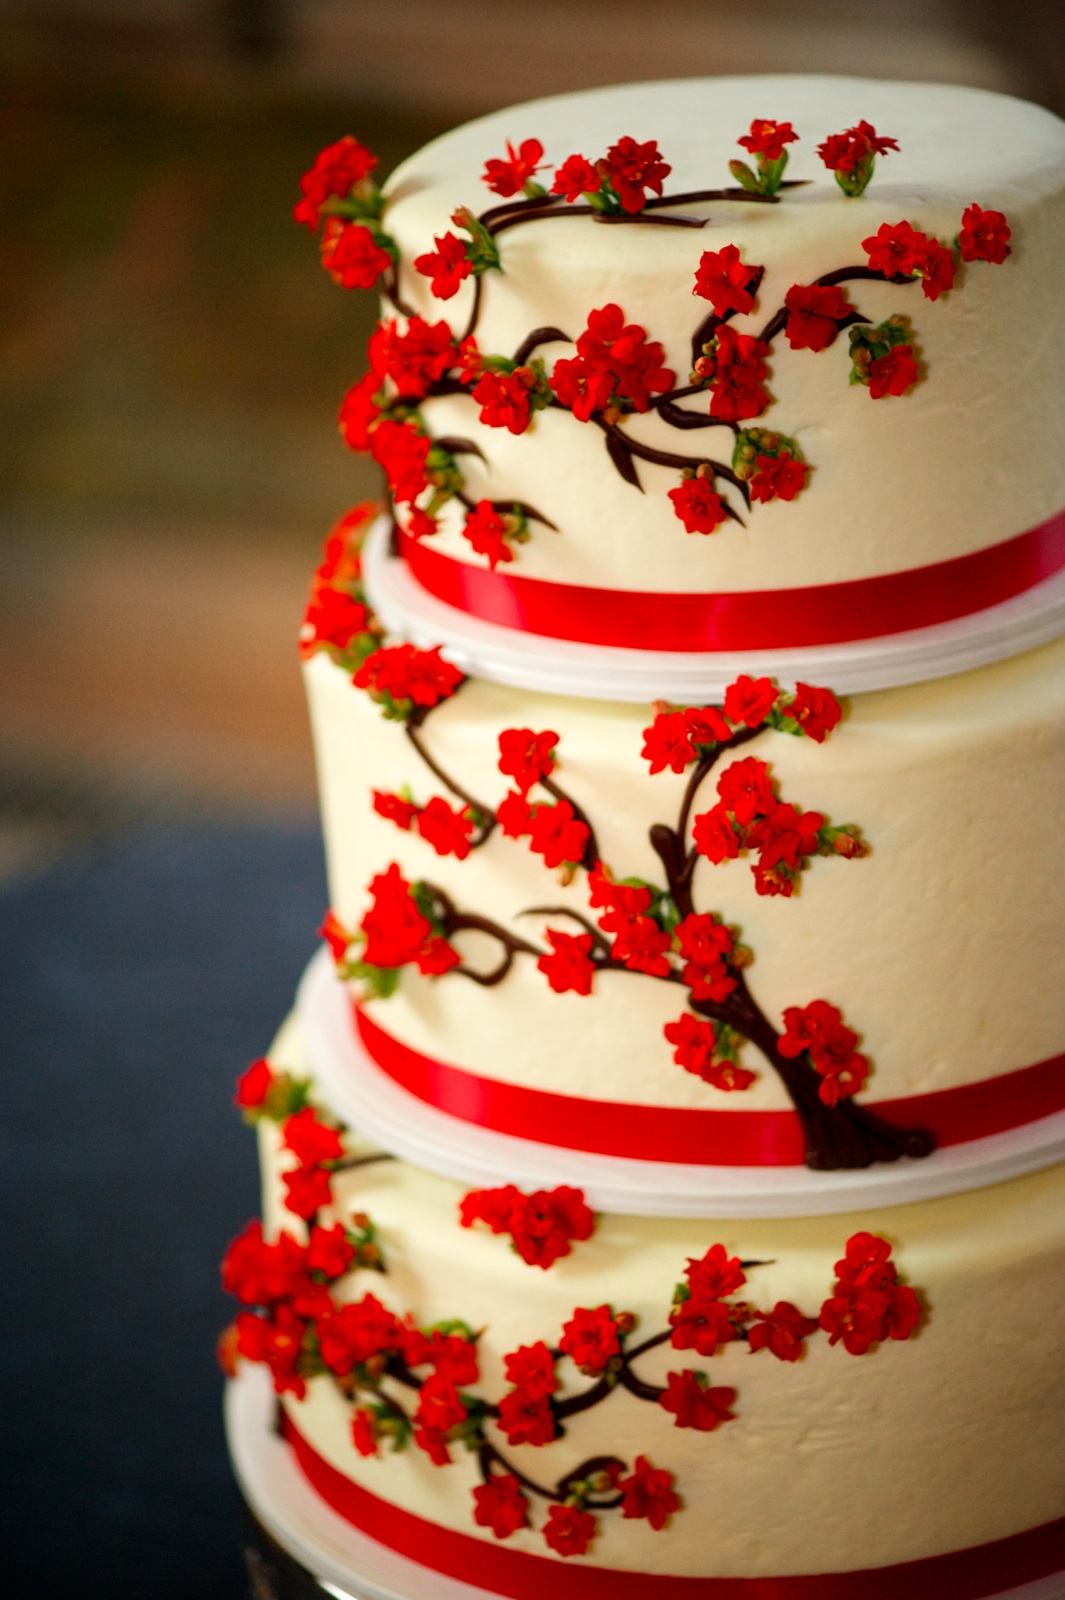 Full Wedding Cake